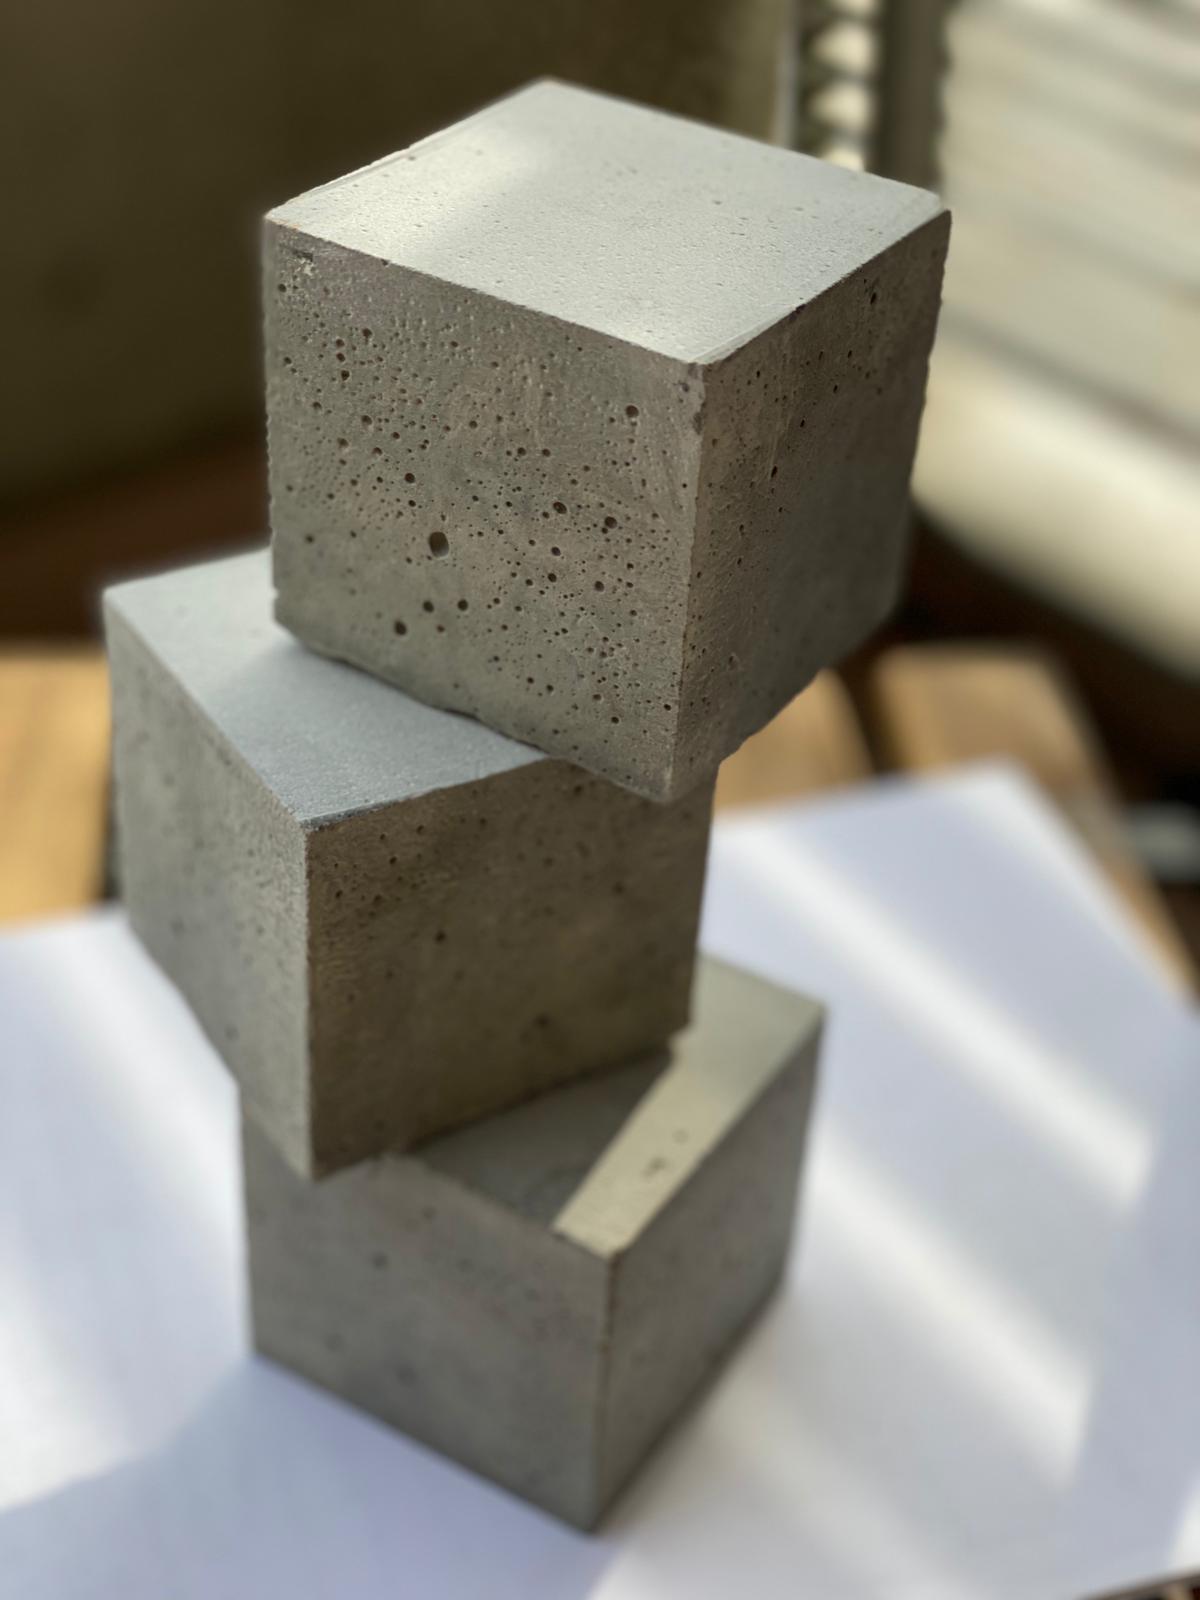 ForteCrete concrete blocks made